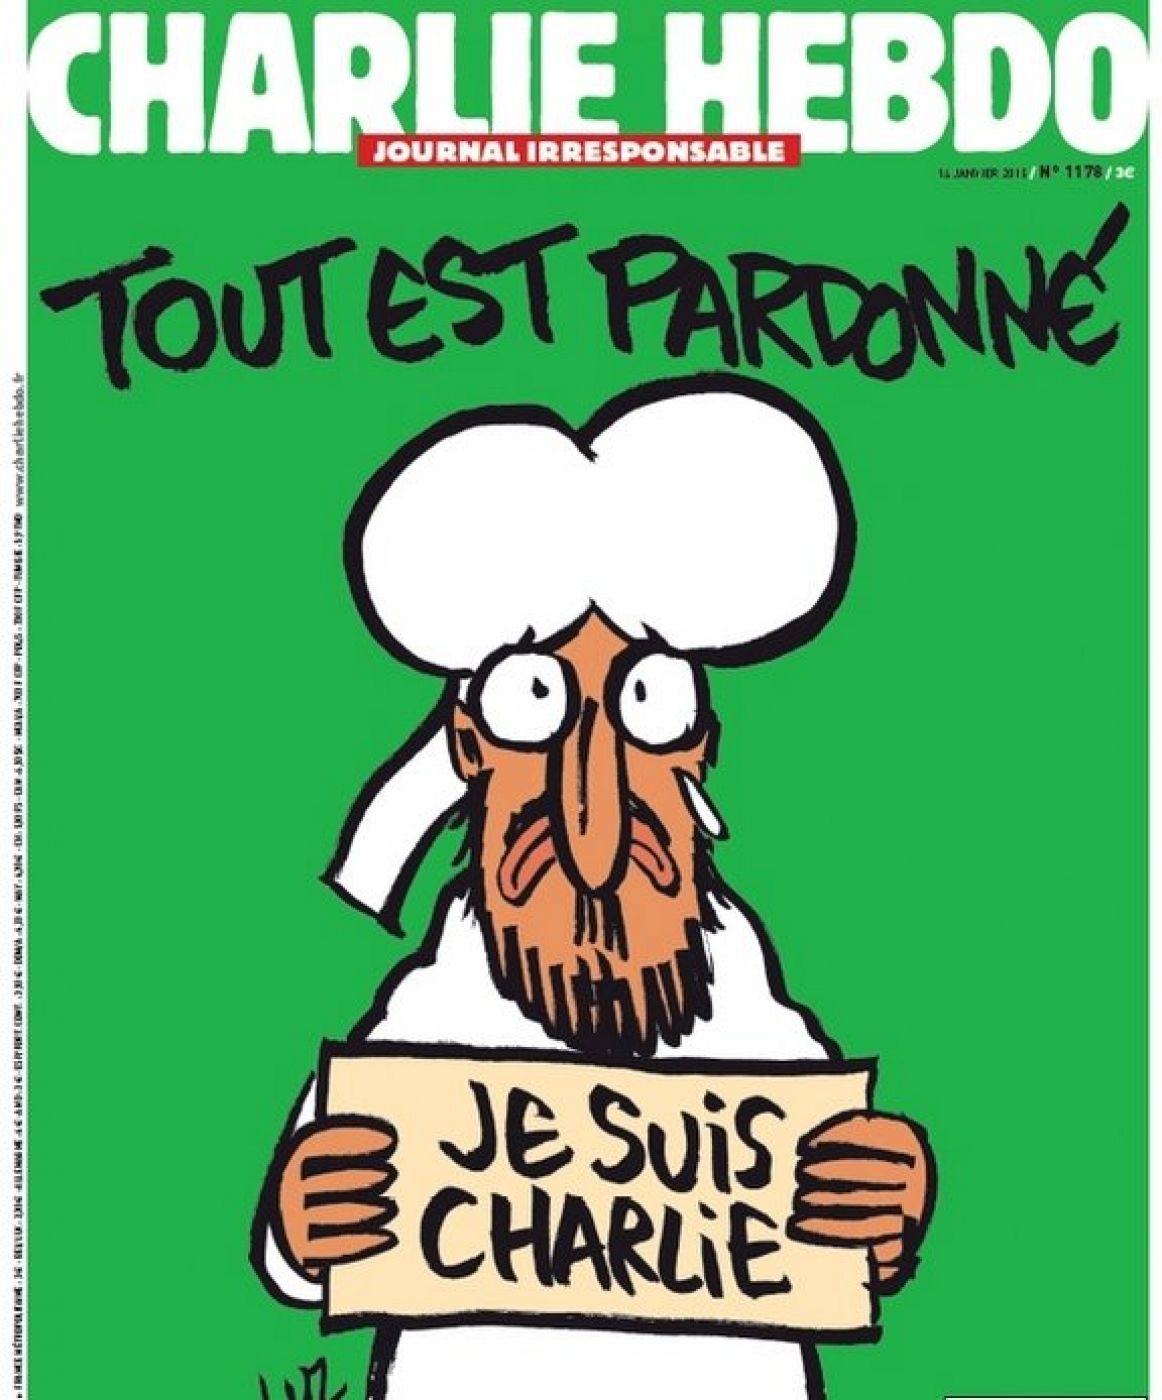 Histórica portada de la publicación Charlie Hebdo tras el atentado